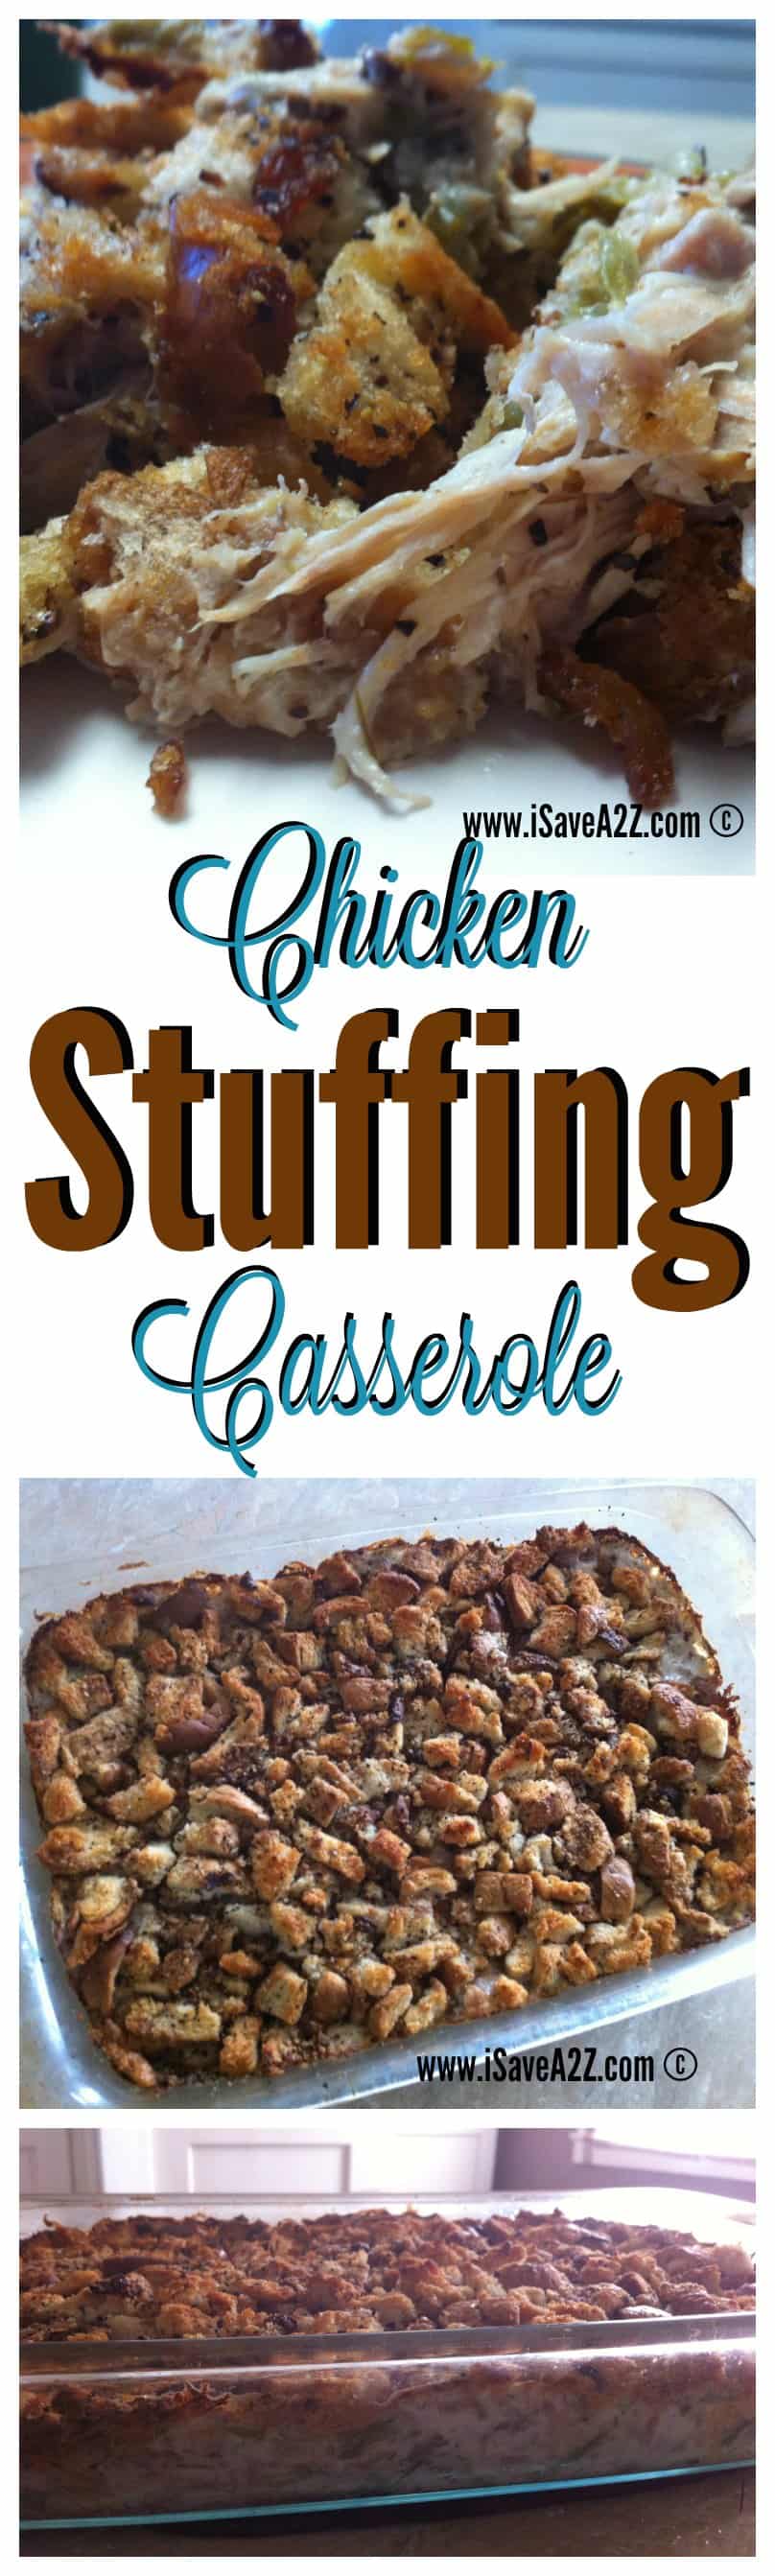 Chicken Stuffing Casserole Bake Recipe